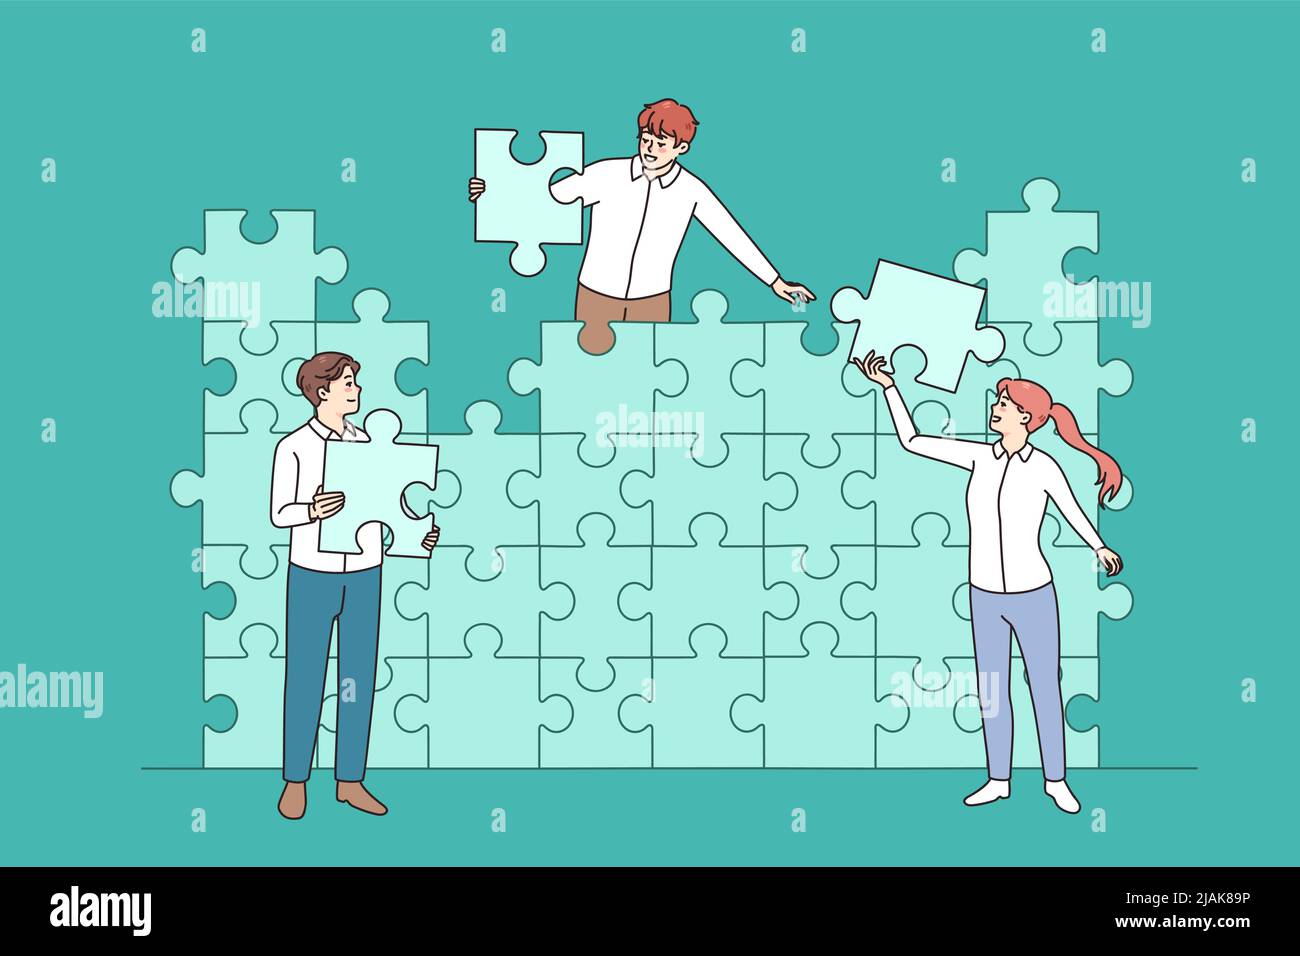 Divers hommes d'affaires connectent des puzzles à la recherche d'une solution d'affaires ensemble. Les employés coopèrent pour joindre des éléments afin de partager des objectifs ou des résultats. Travail d'équipe. Illustration vectorielle. Illustration de Vecteur